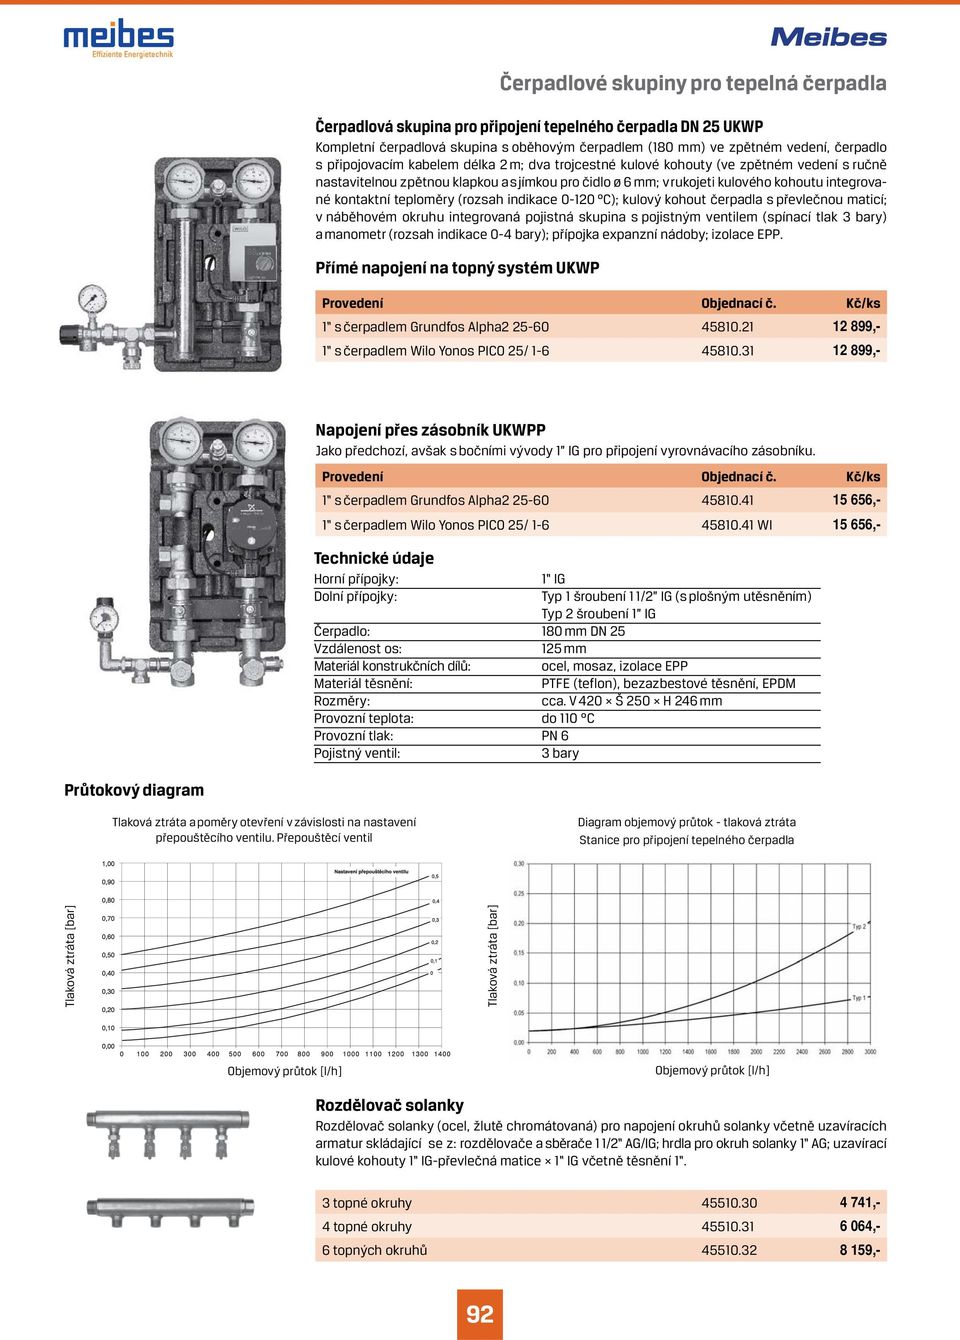 teploměry (rozsah indikace 0-120 C); kulový kohout čerpadla s převlečnou maticí; v náběhovém okruhu integrovaná pojistná skupina s pojistným ventilem (spínací tlak bary) a manometr (rozsah indikace